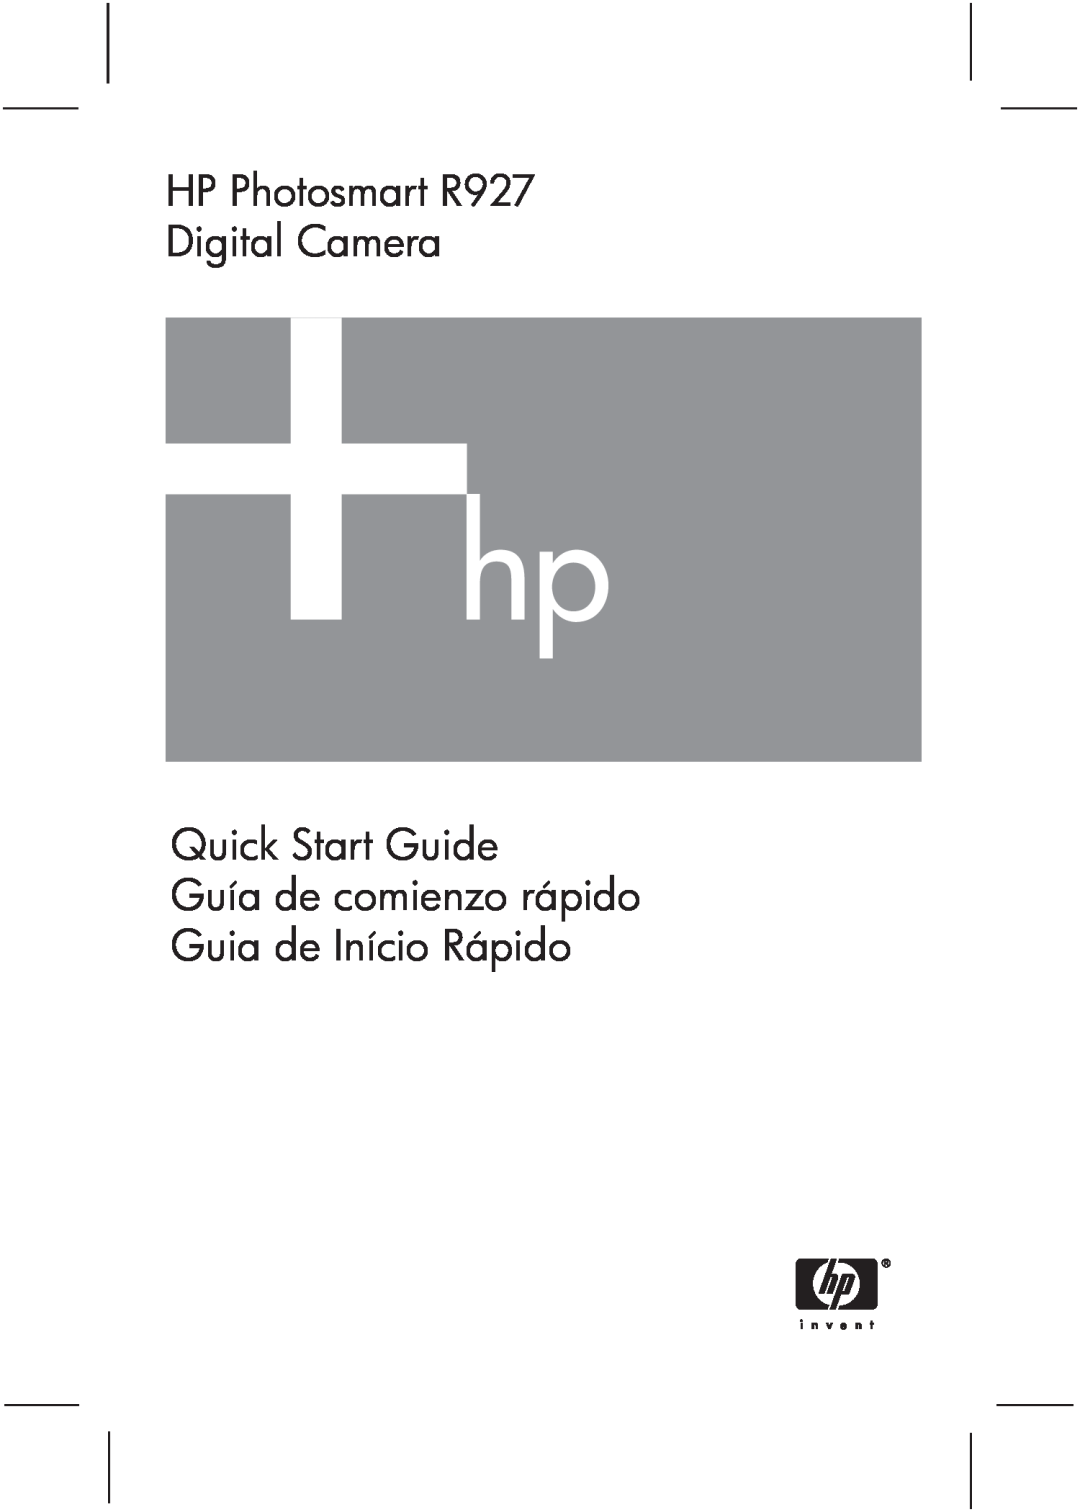 HP manual Quick Start Guide Guía de comienzo rápido Guia de Início Rápido, HP Photosmart R927 Digital Camera 